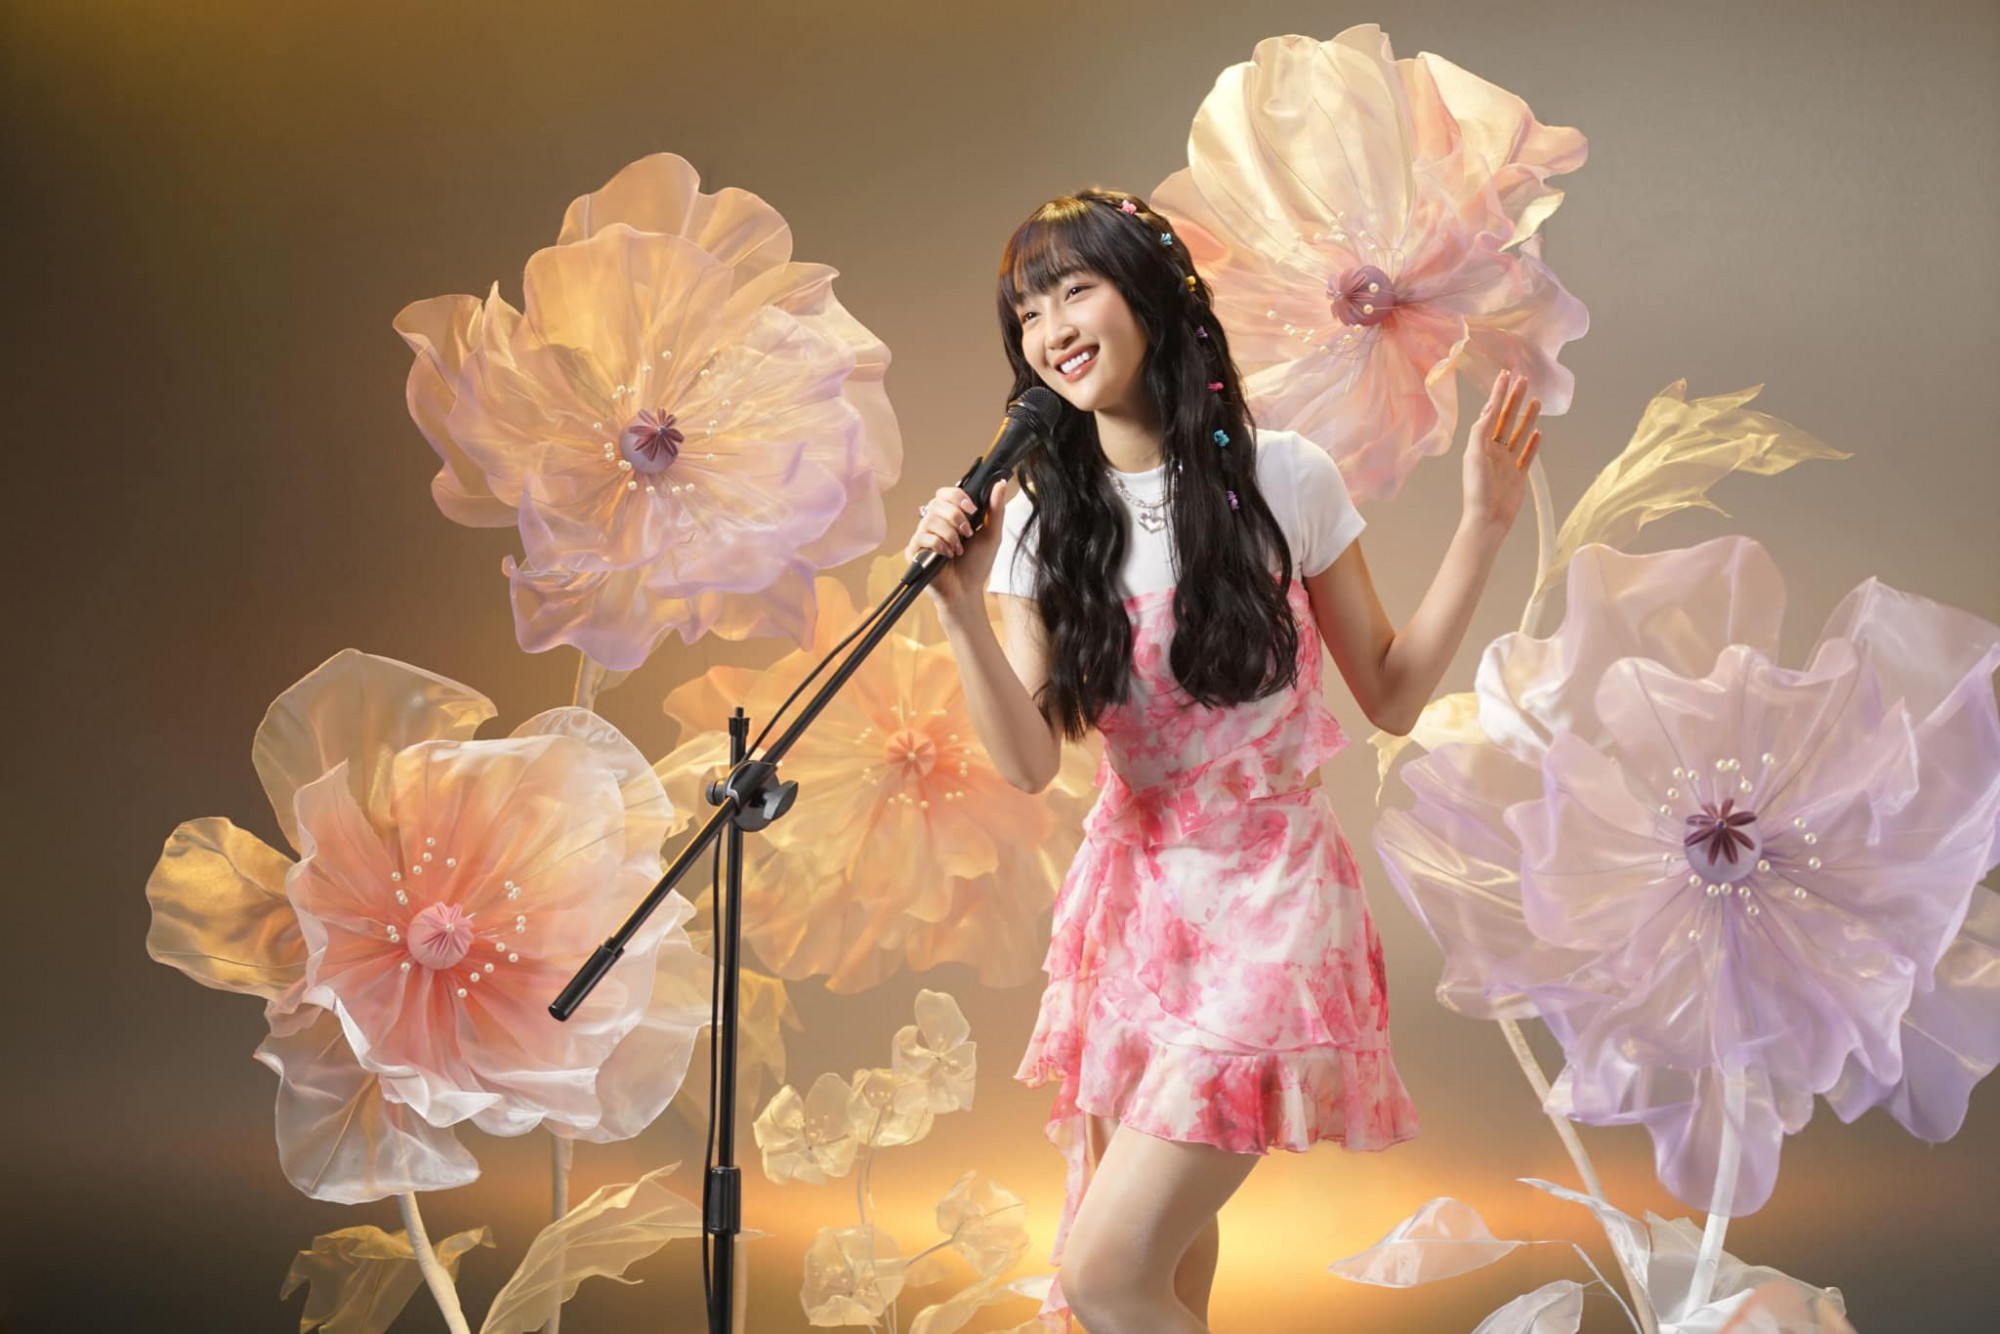 Juky San hiện là một trong những giọng ca gen Z nổi bật, có màu sắc riêng trong âm nhạc